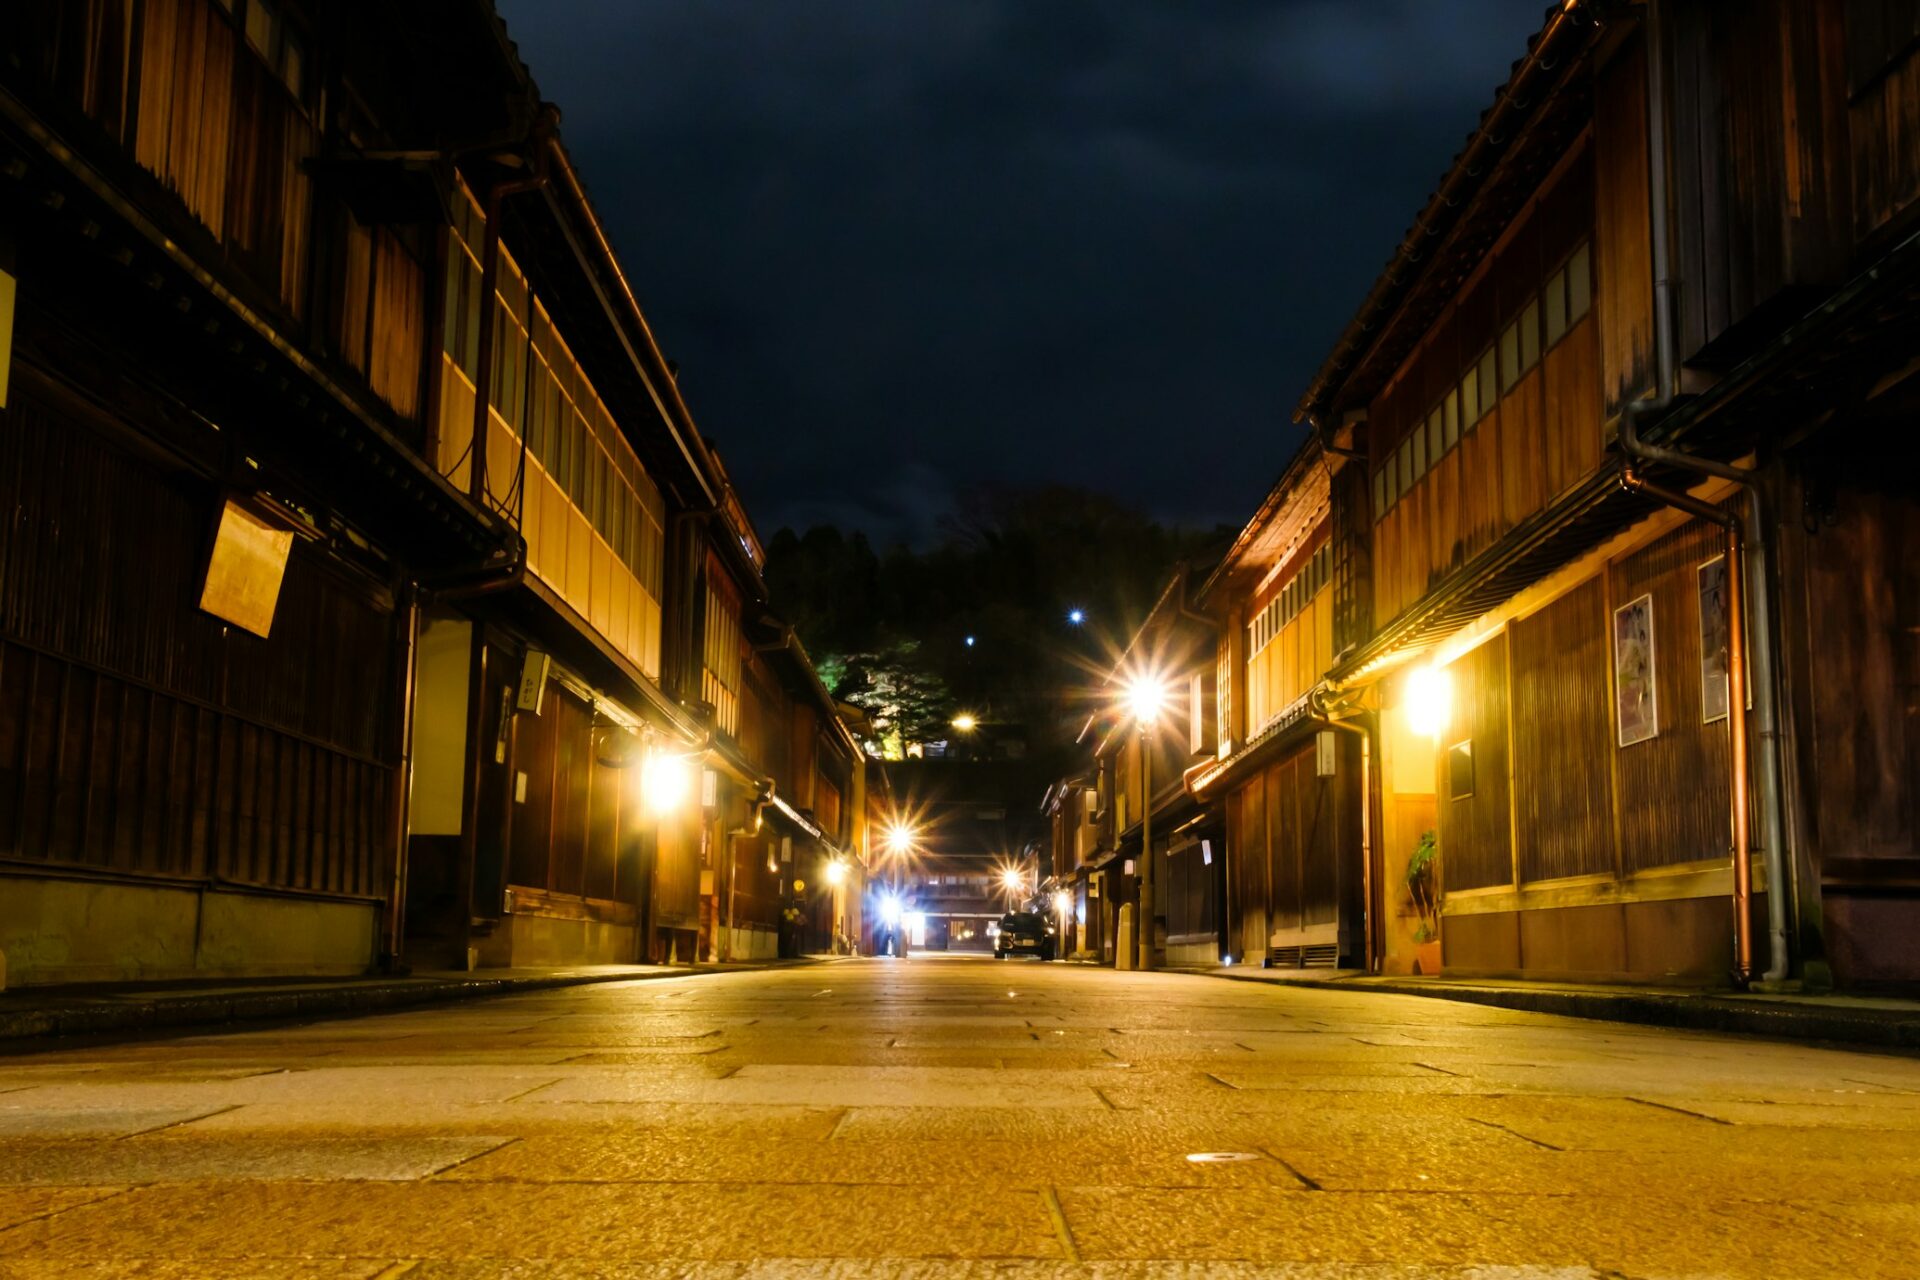 にし茶屋街は、金沢の伝統的な町並みを楽しむことができるエリア